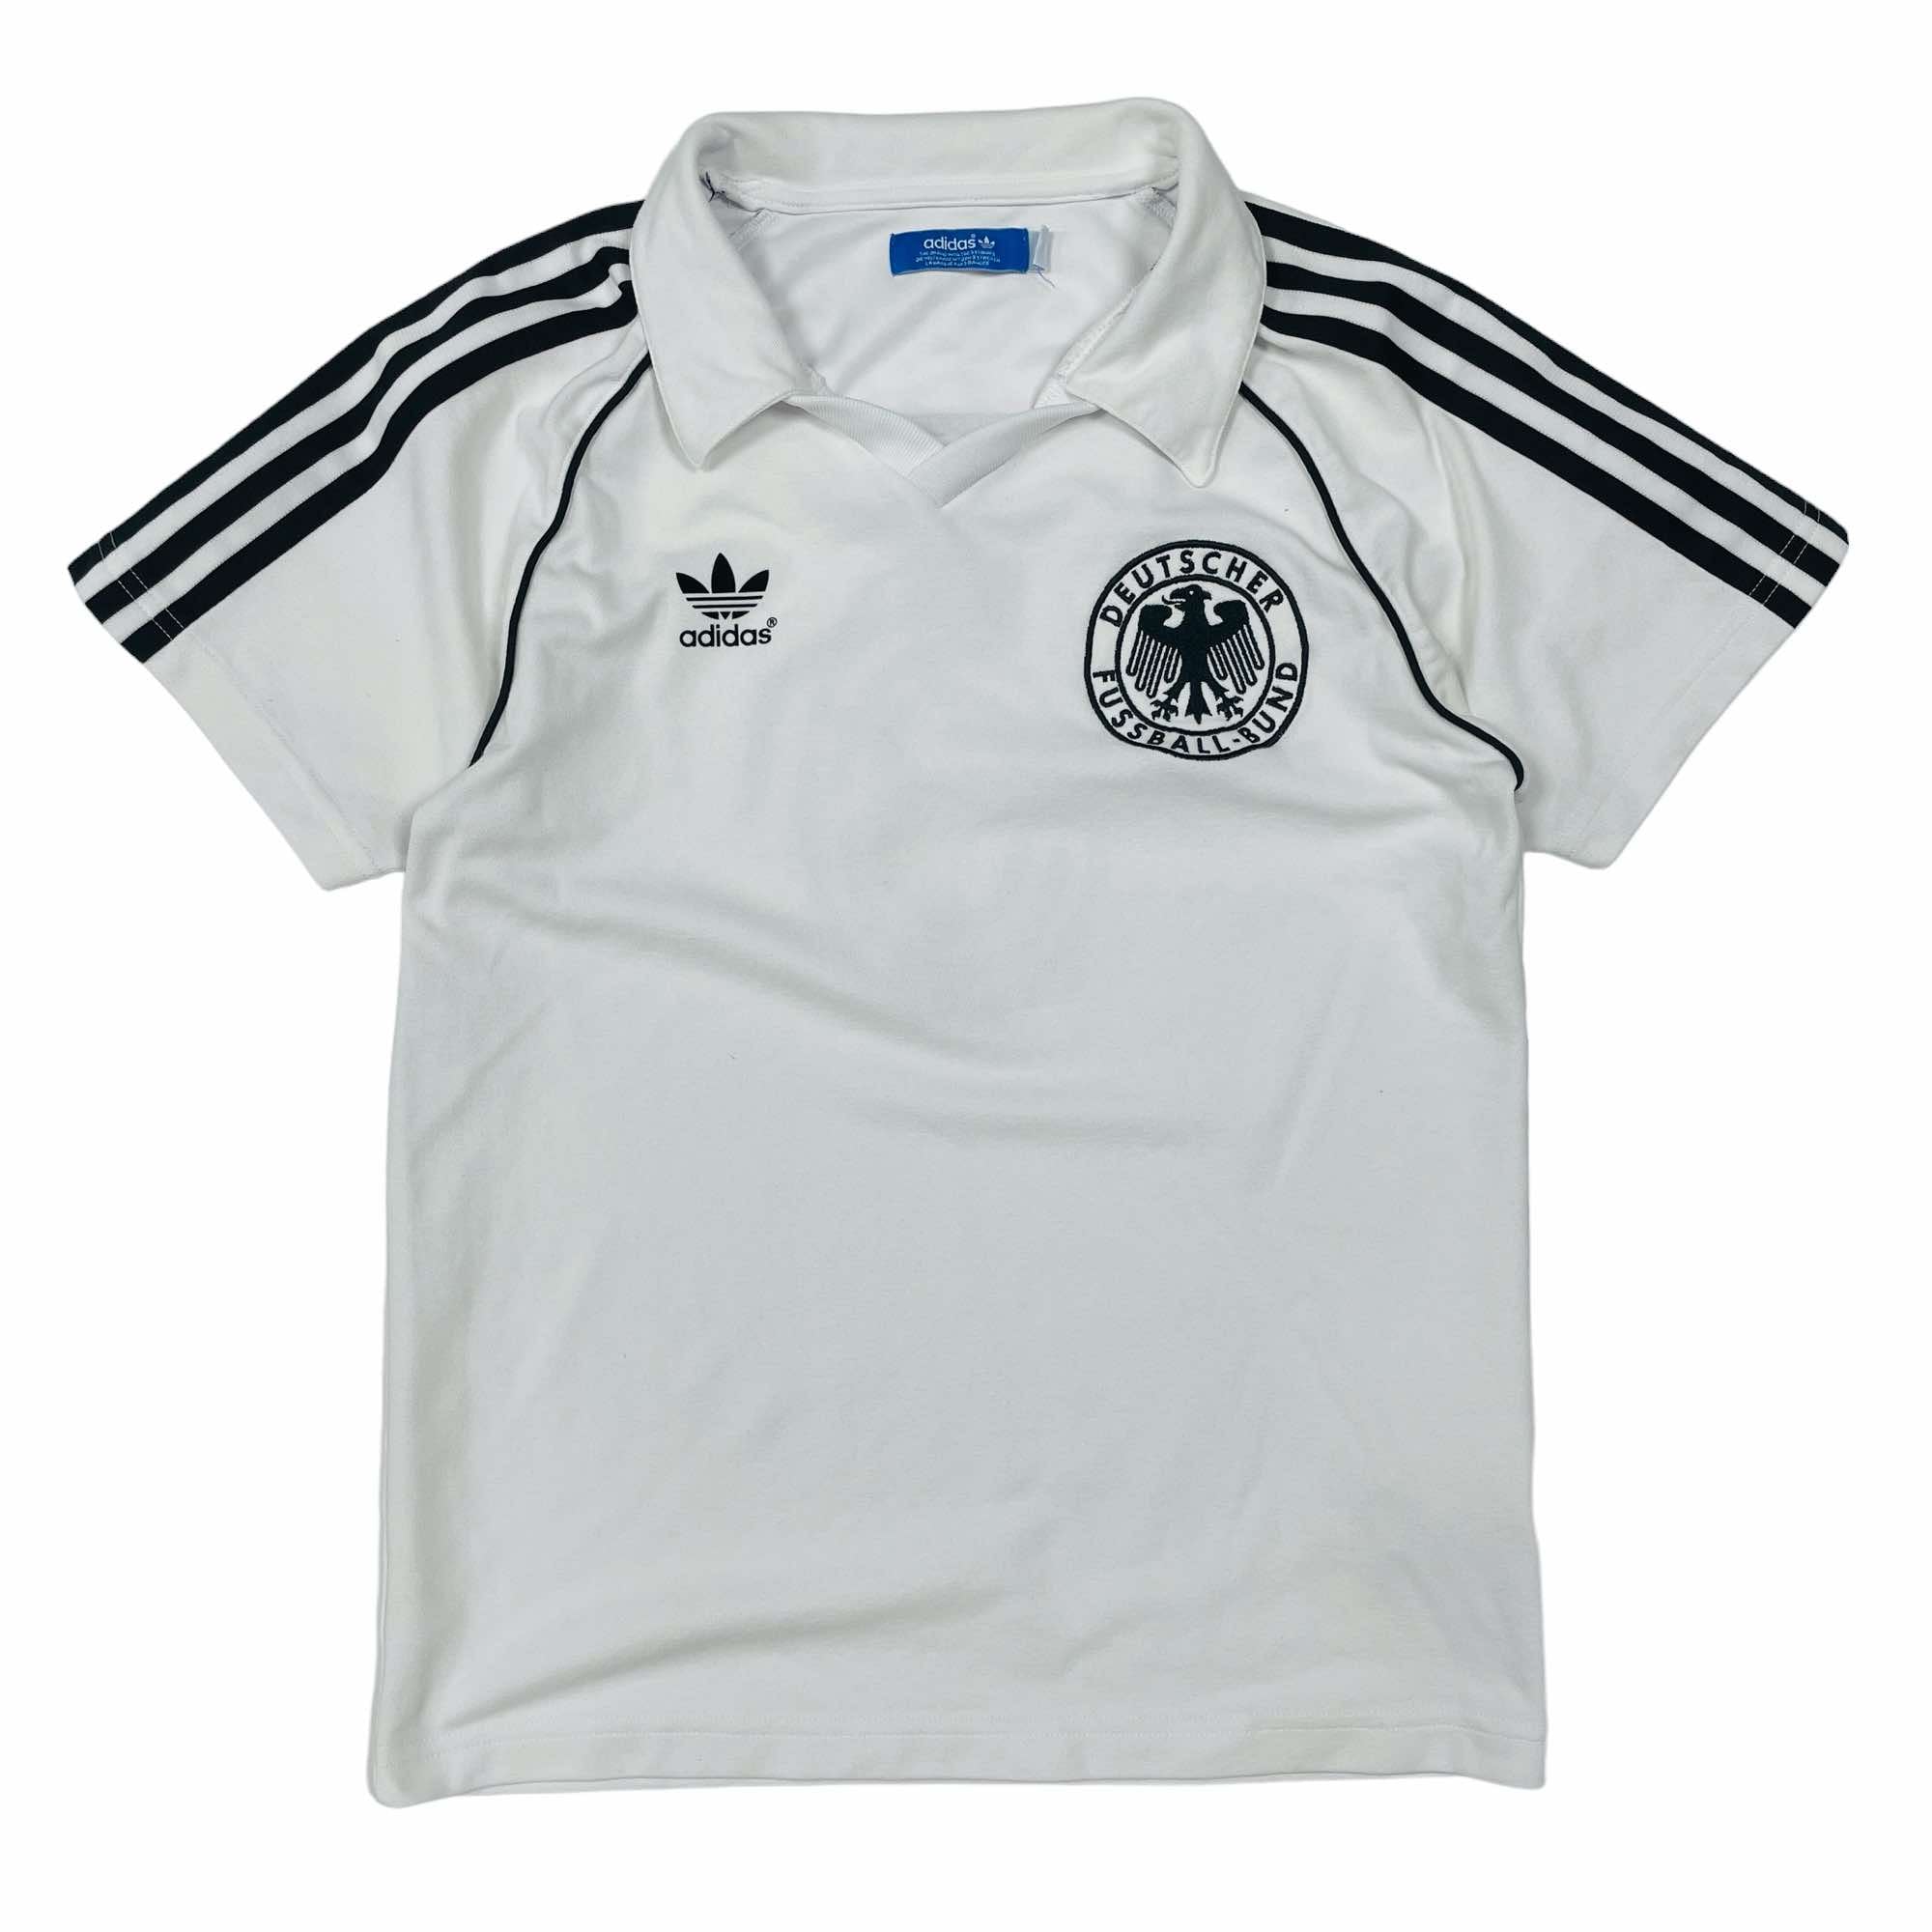 Germany Retro Adidas Franz Beckenbauer Shirt - Small